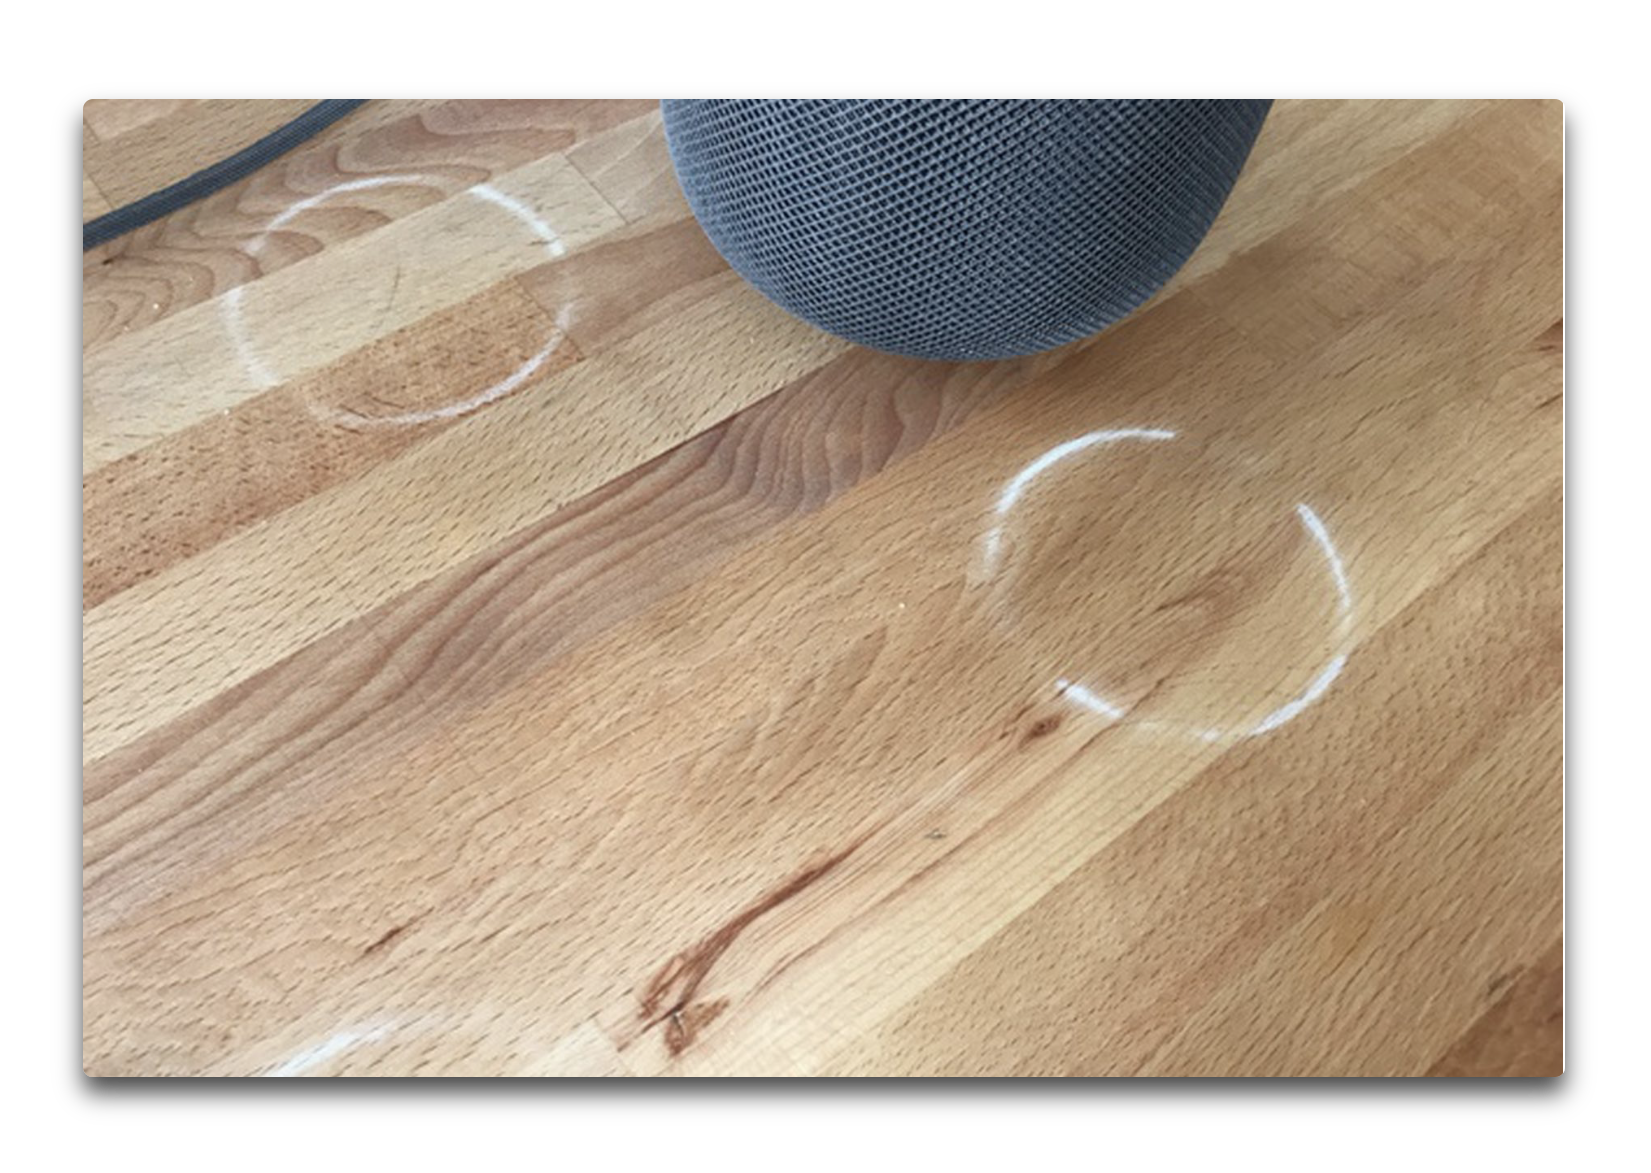 AppleのHomePod、木製のテーブルの上に白いリングの跡を残す問題があり、ケアする方法をサポート記事で公開